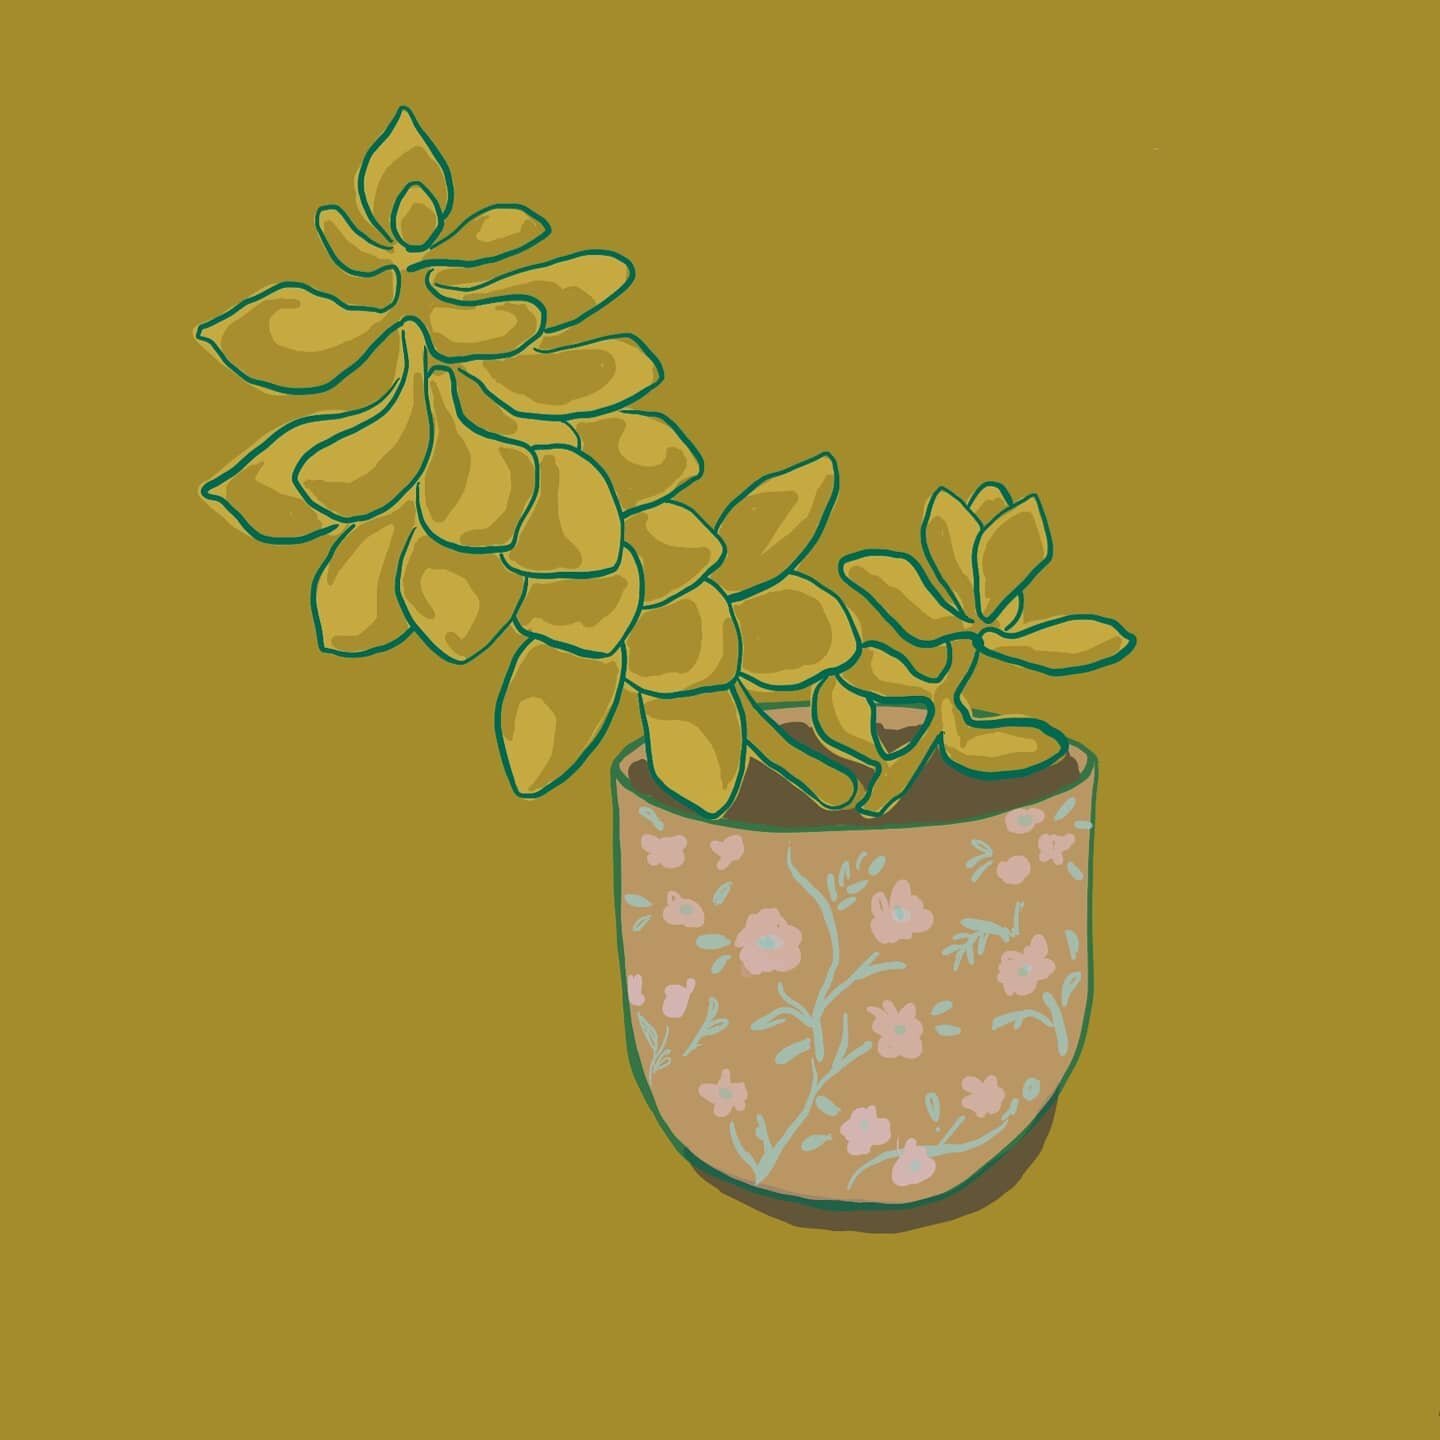 .
.
.
.
#succulents #succulentillustration #digitalillustration #plantlife #plantsketch #surfacedesign #illustration